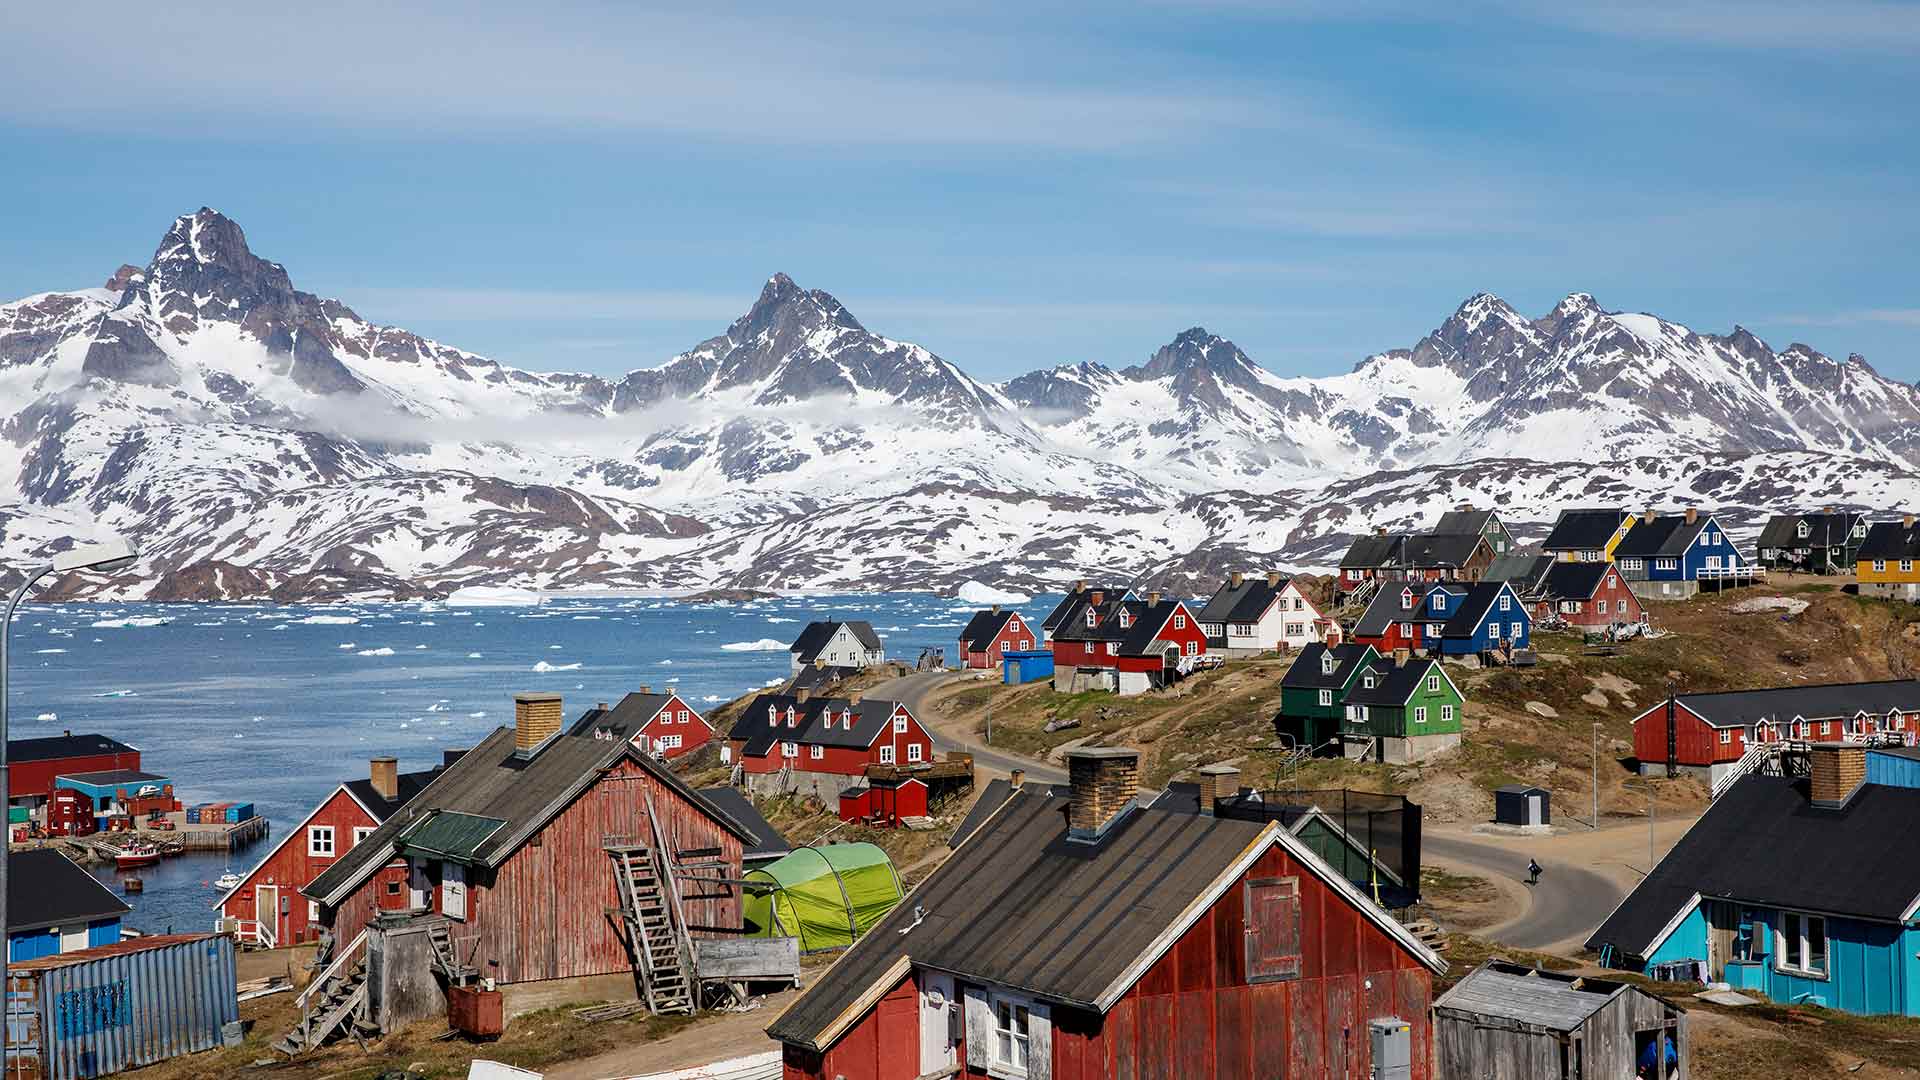 Trump confirma que considera comprar Groenlandia: "Sería un gran negocio inmobiliario"